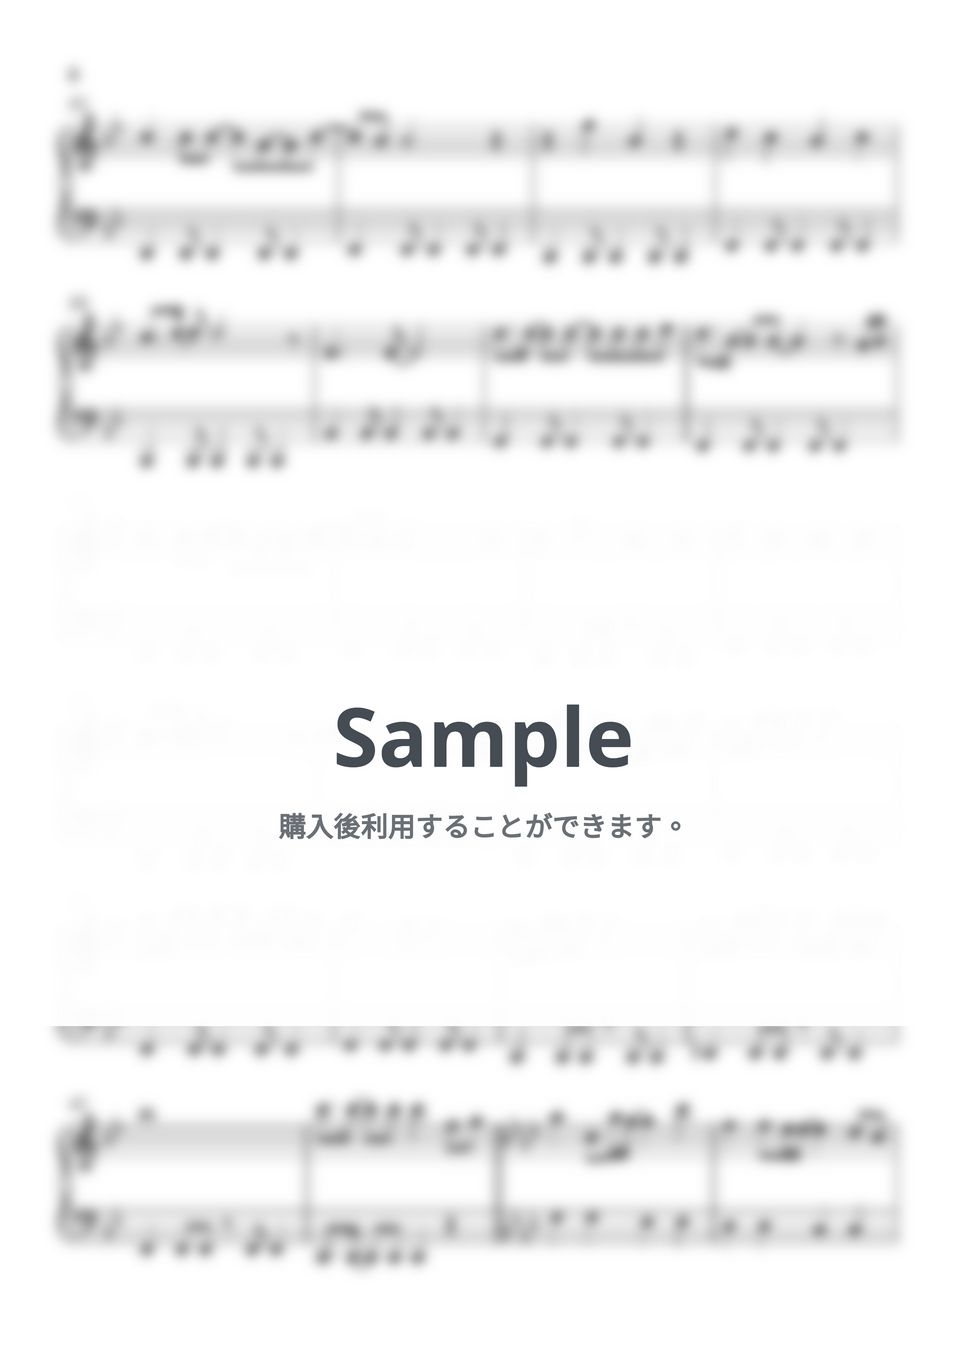 玉置成美 - Reason (機動戦士ガンダムSEED) by Piano Lovers. jp